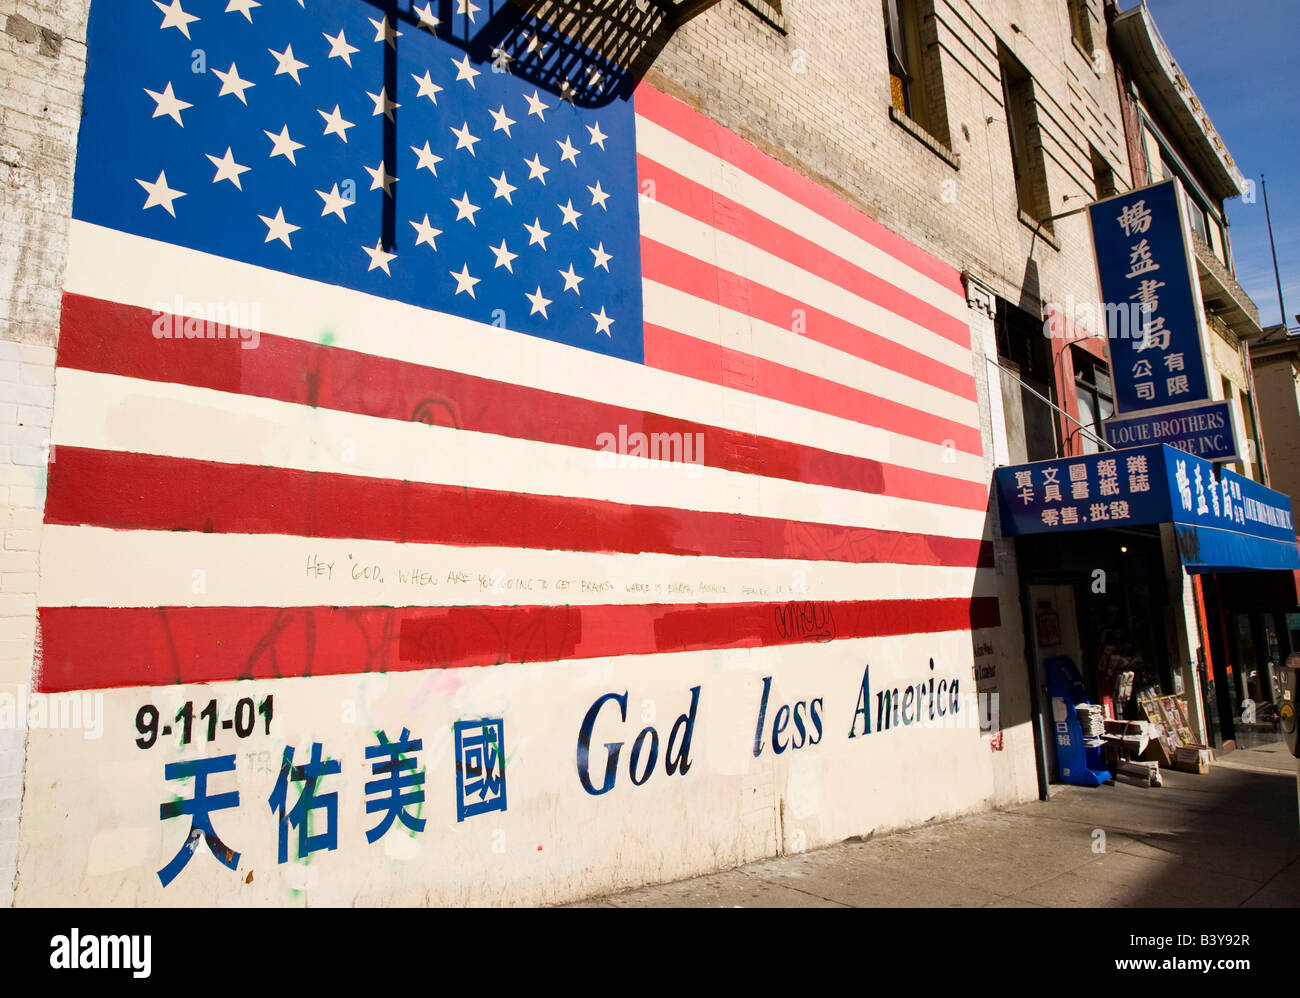 États-unis, Californie, San Francisco. Moins d'Amérique Dieu signe et drapeau américain peint sur mur dans Chinatown. Banque D'Images